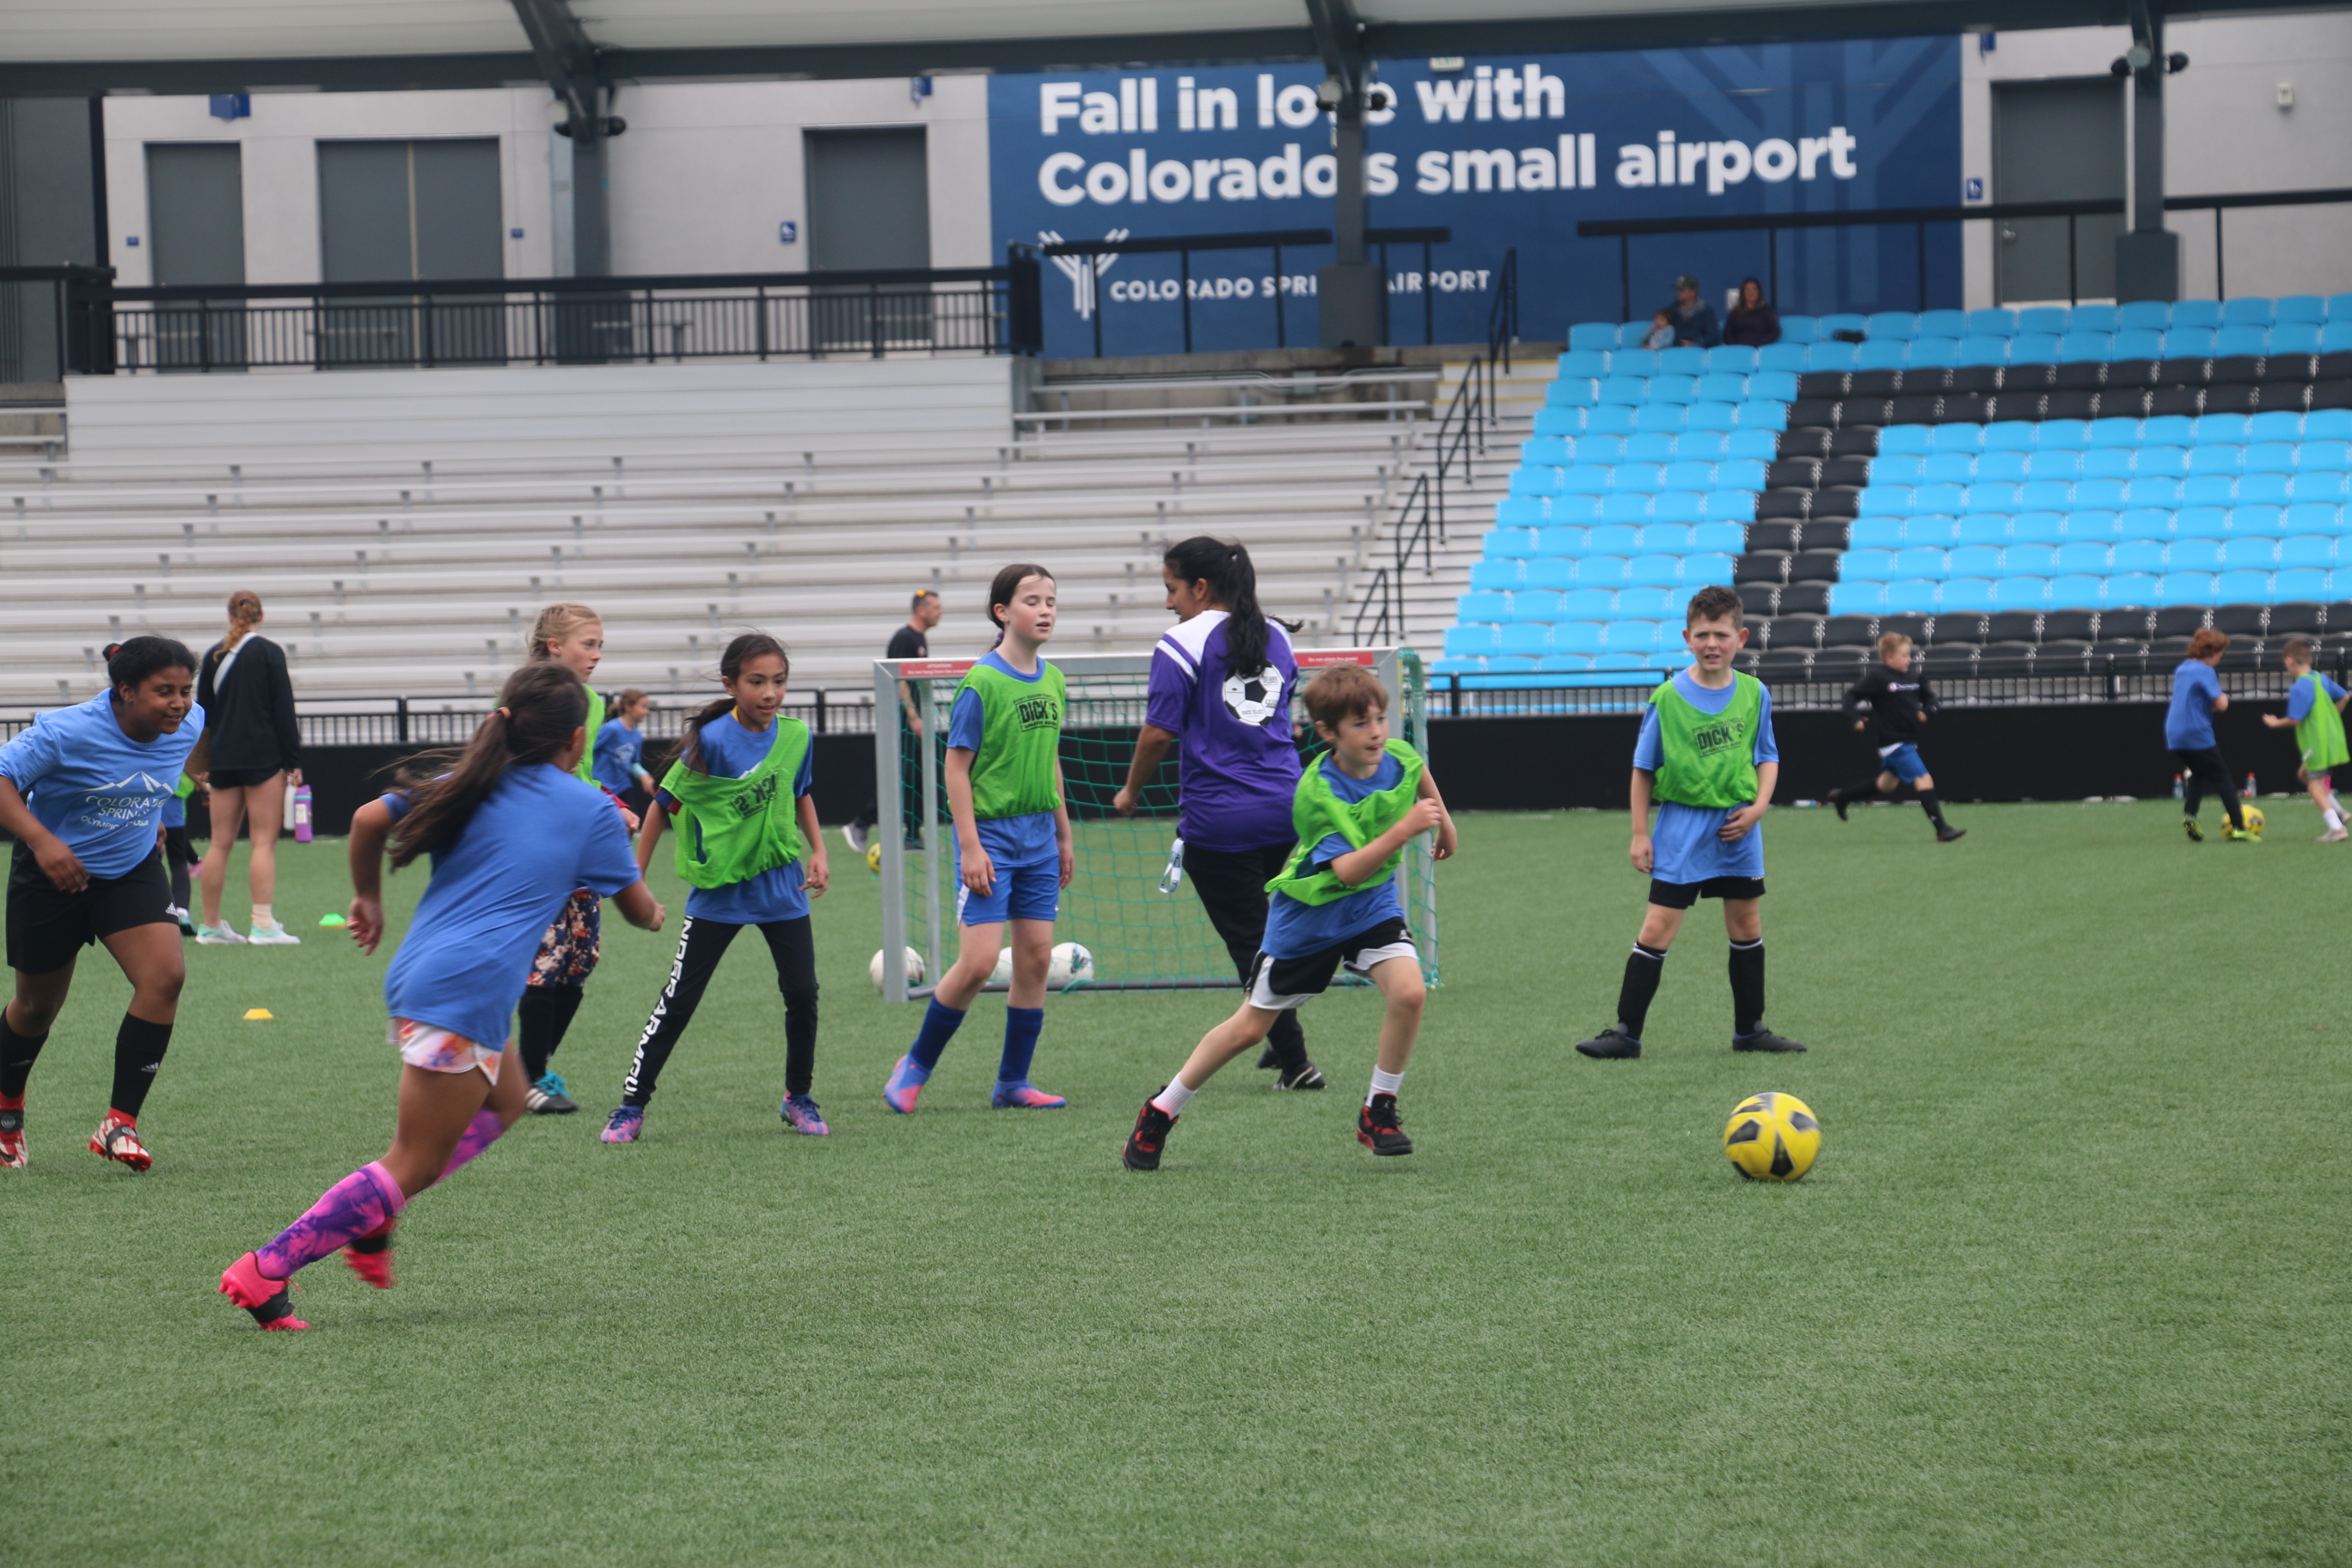 Children participate in a field day soccer game